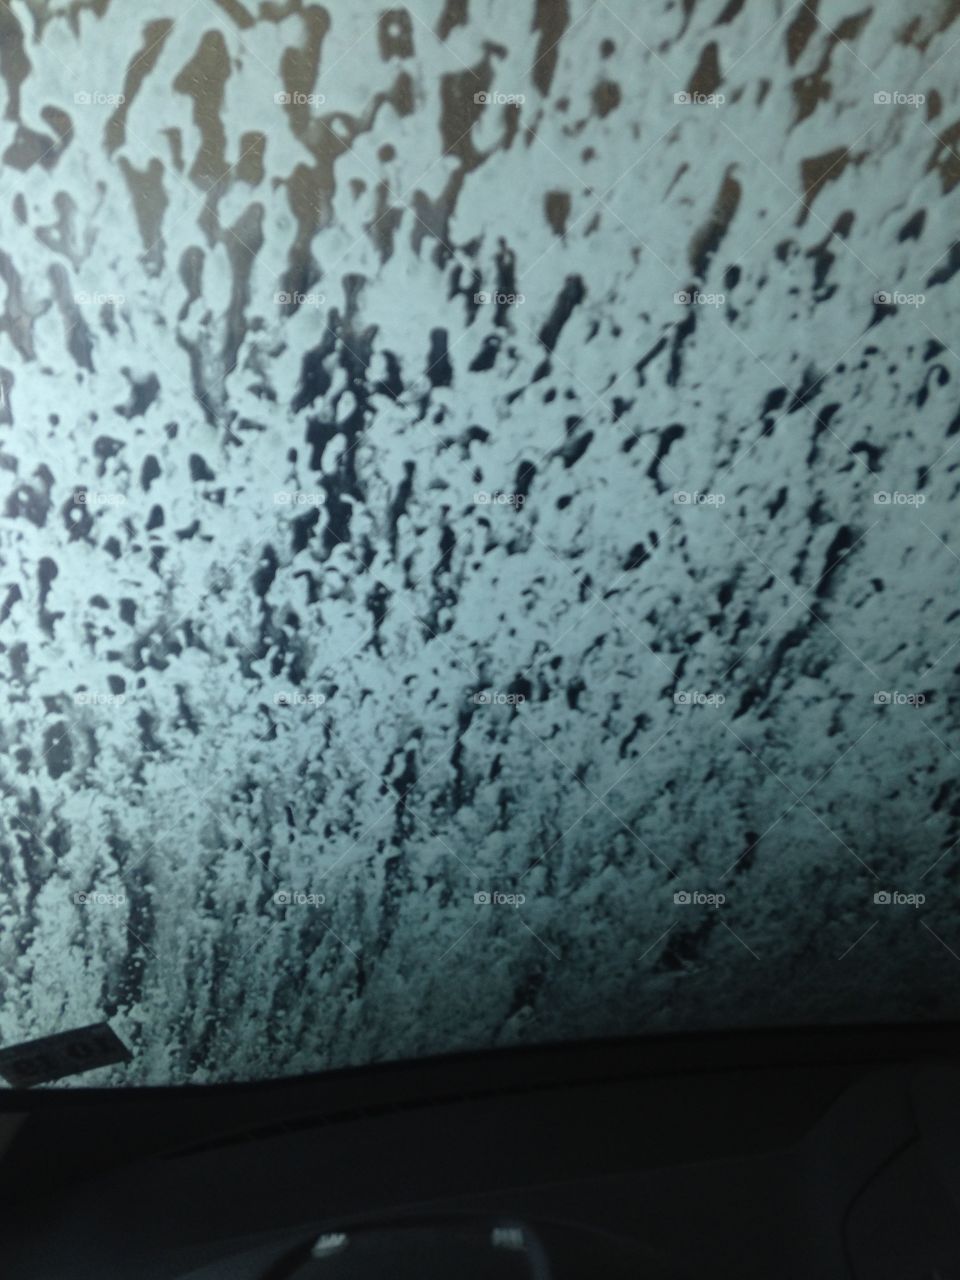 Soap spray at the car wash